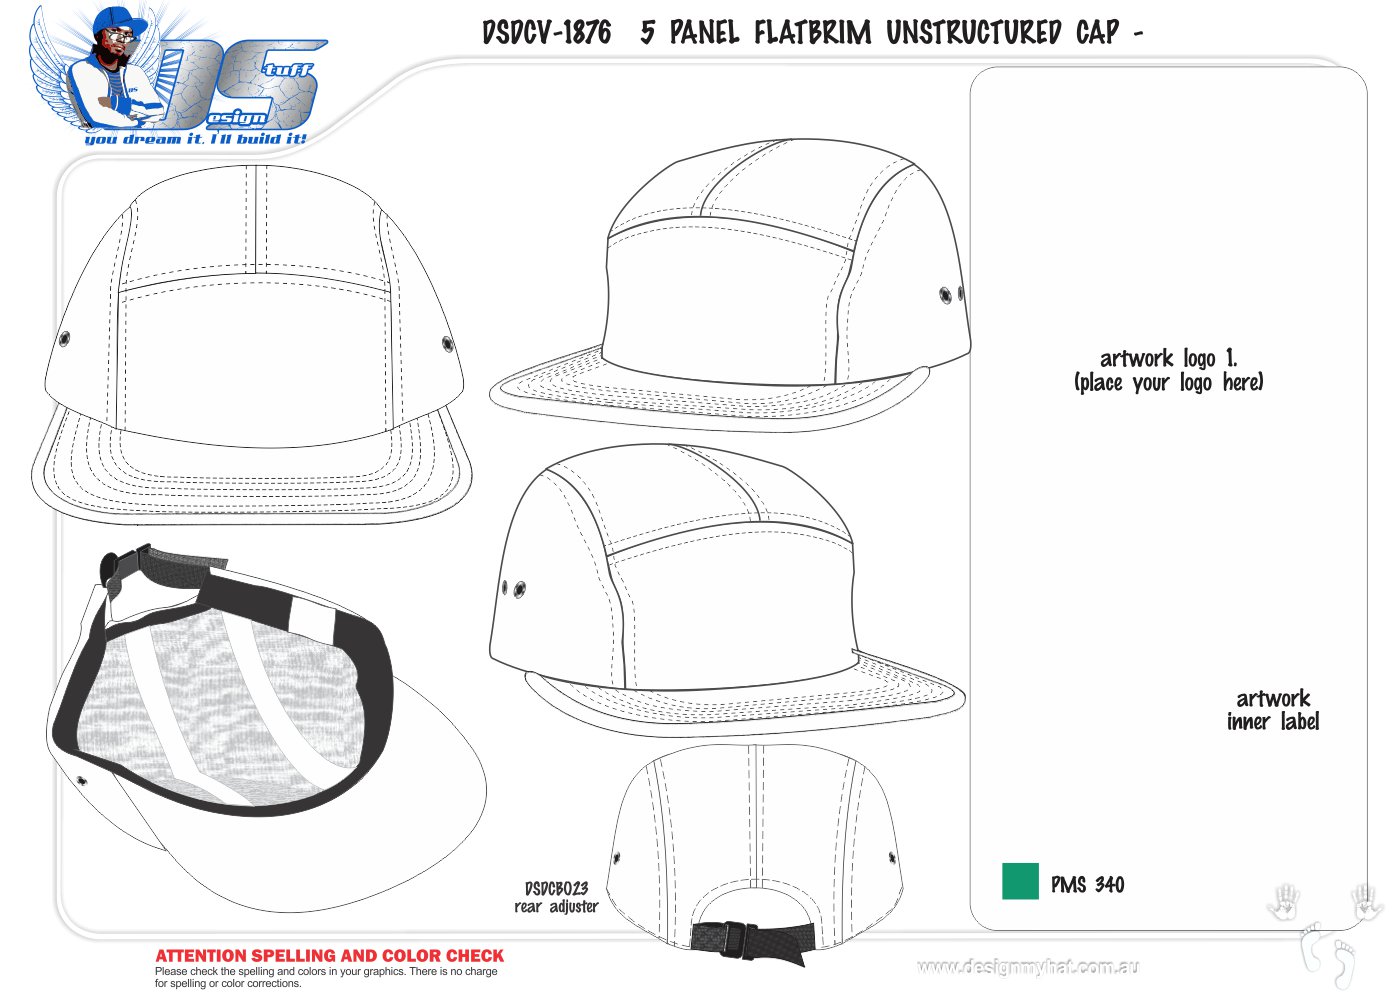 beanie-hat-new-77-beanie-hat-design-template